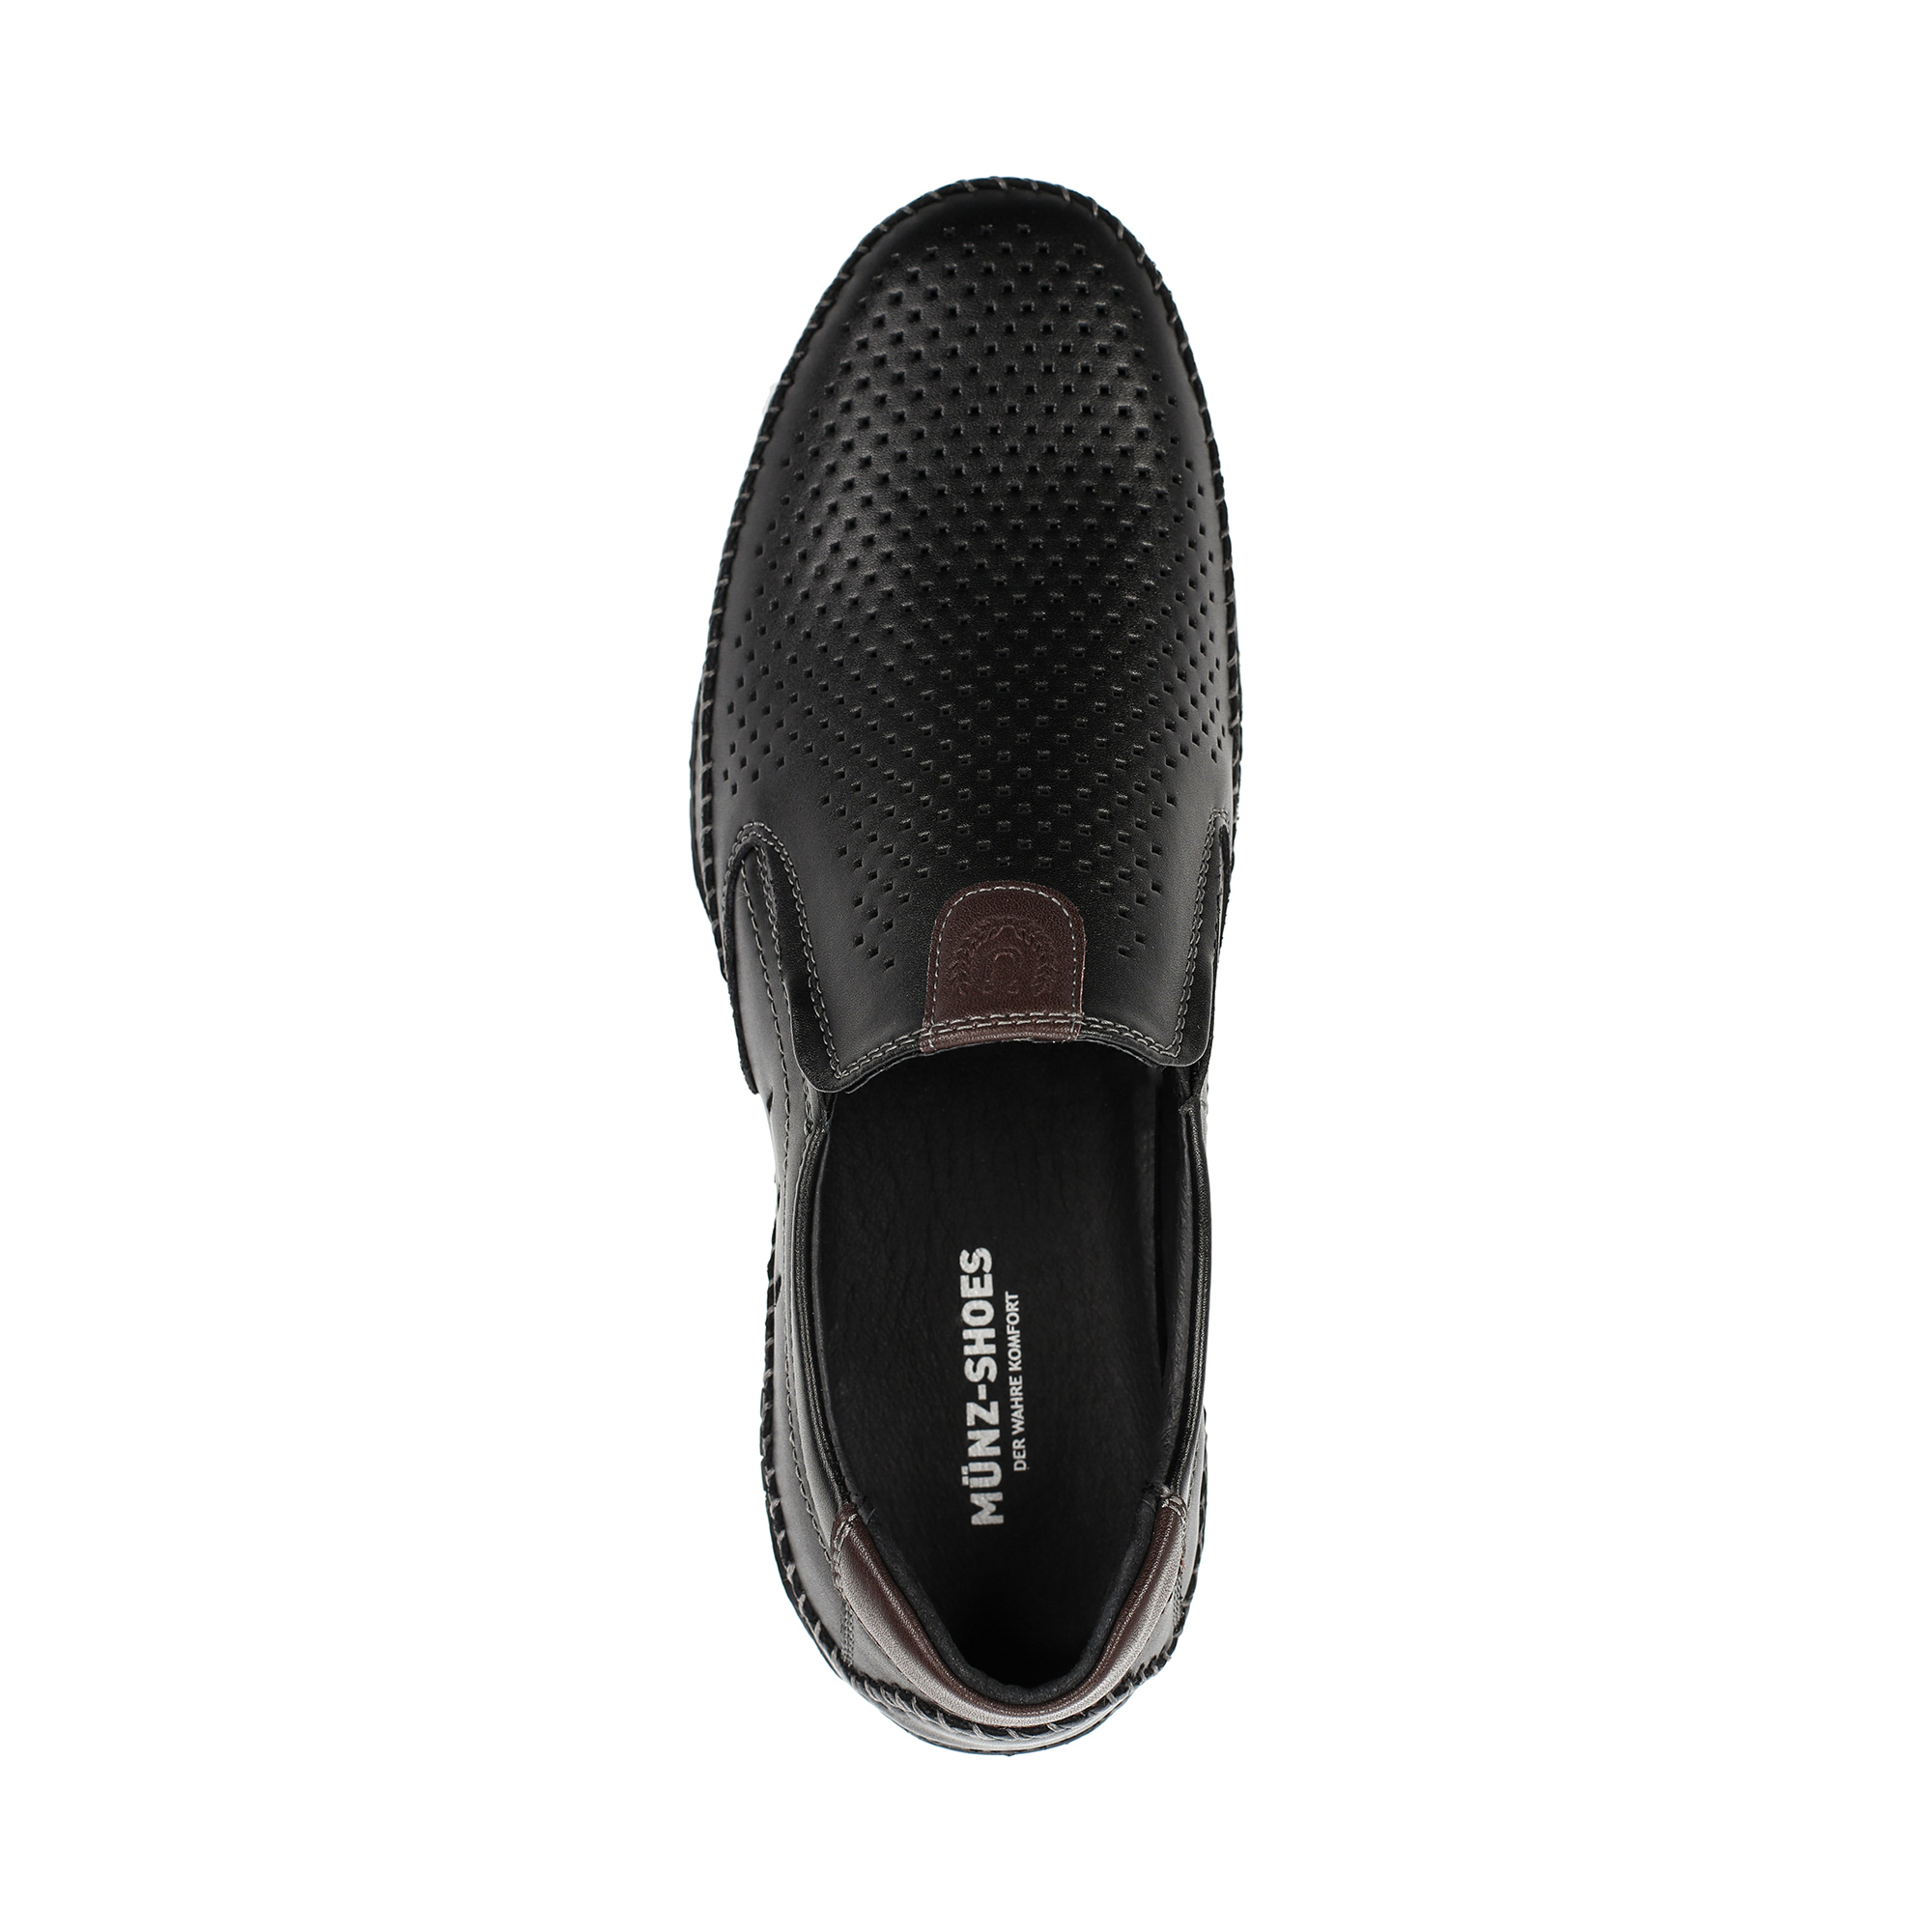 Туфли/полуботинки MUNZ Shoes 058-118D-1602, цвет черный, размер 42 - фото 5